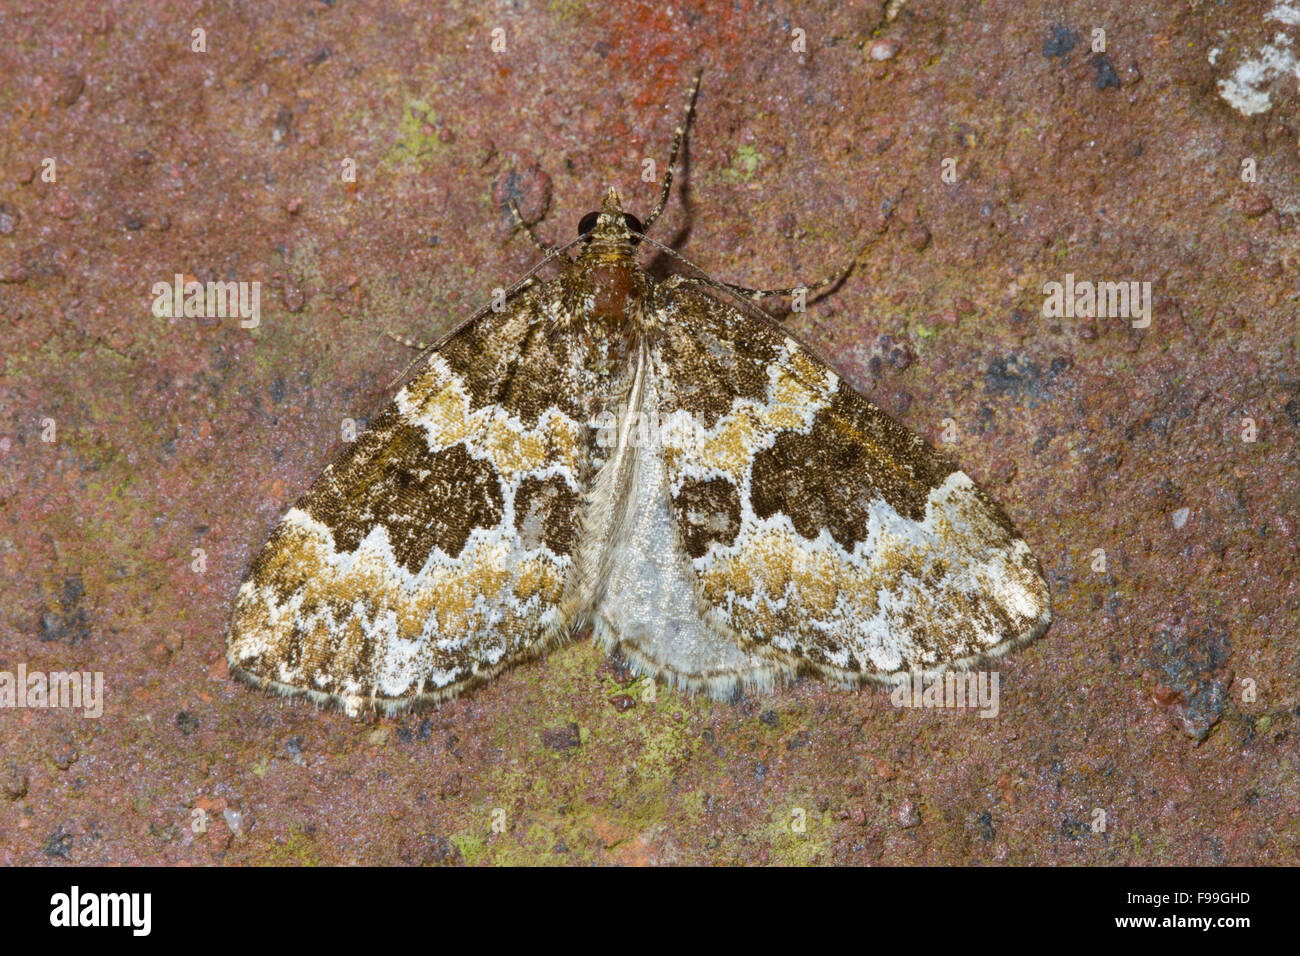 Gebrochen verjährt Teppich (Electrophaes Corylata) Erwachsenen Falter ruht auf einer Mauer. Powys, Wales, Juni. Stockfoto